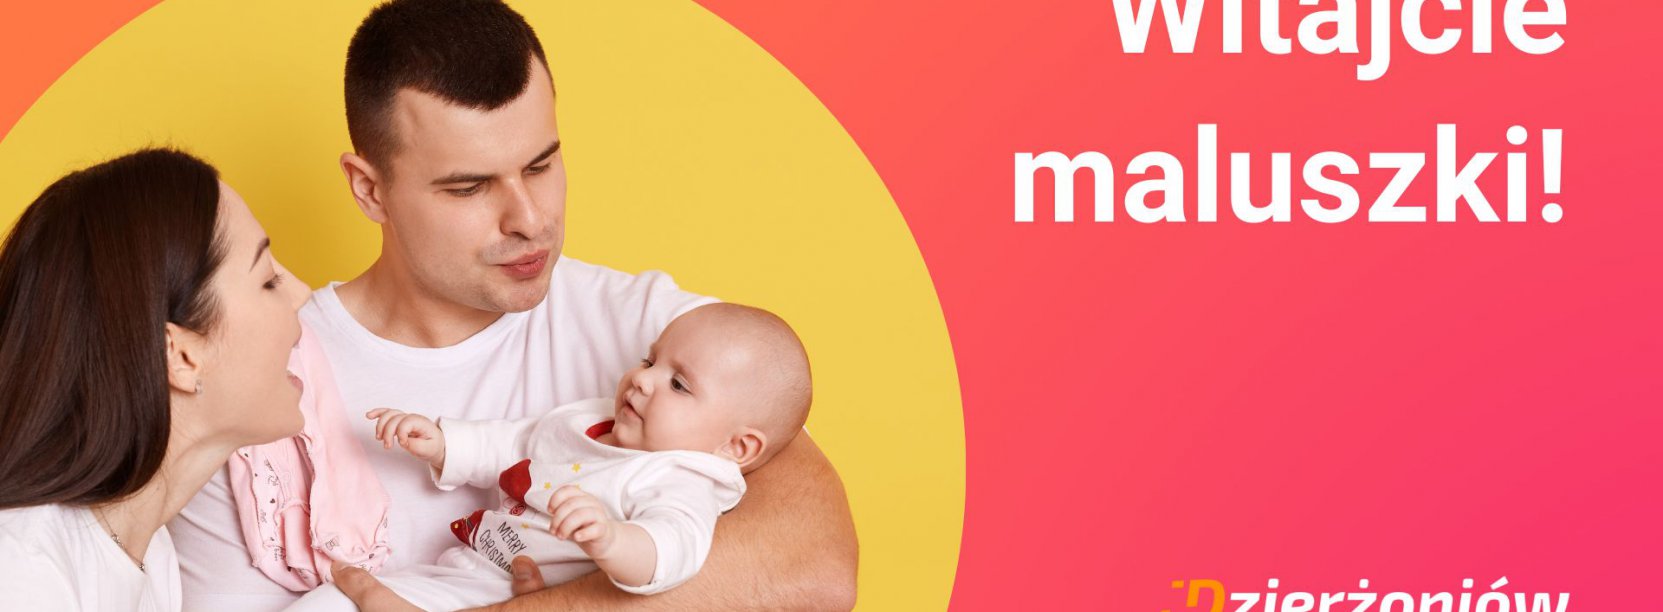 Grafika z napisem Witajcie maluszki i zdjęciem rodziców trzymających niemowlakaa